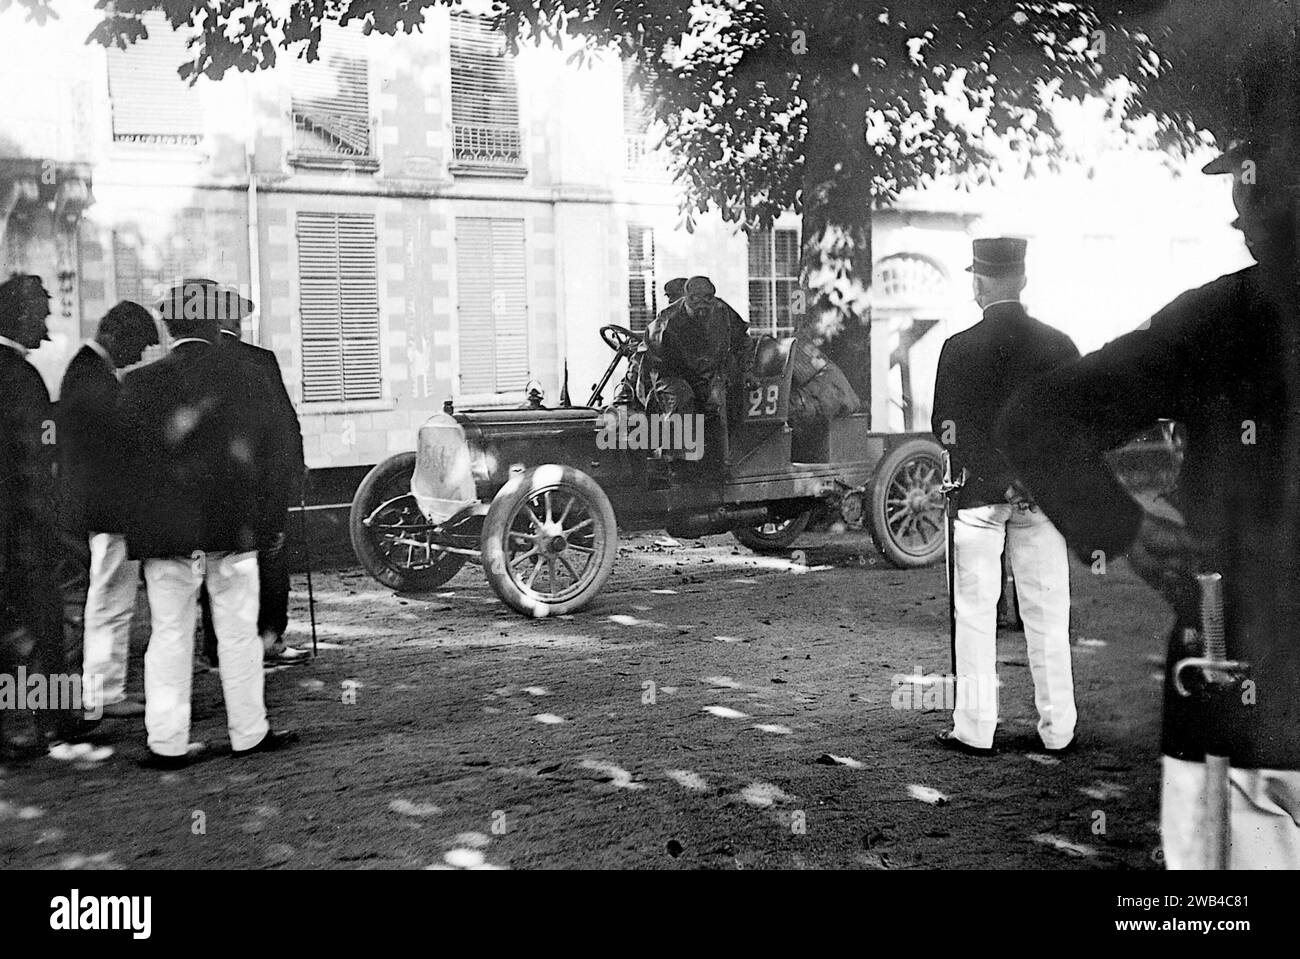 Prima edizione della 24 ore di le Mans endurance sport car race (24 heures du Mans). 26 e 27 giugno 1906. Un concorrente si è fermato. Foto di Jean de Biré Foto Stock